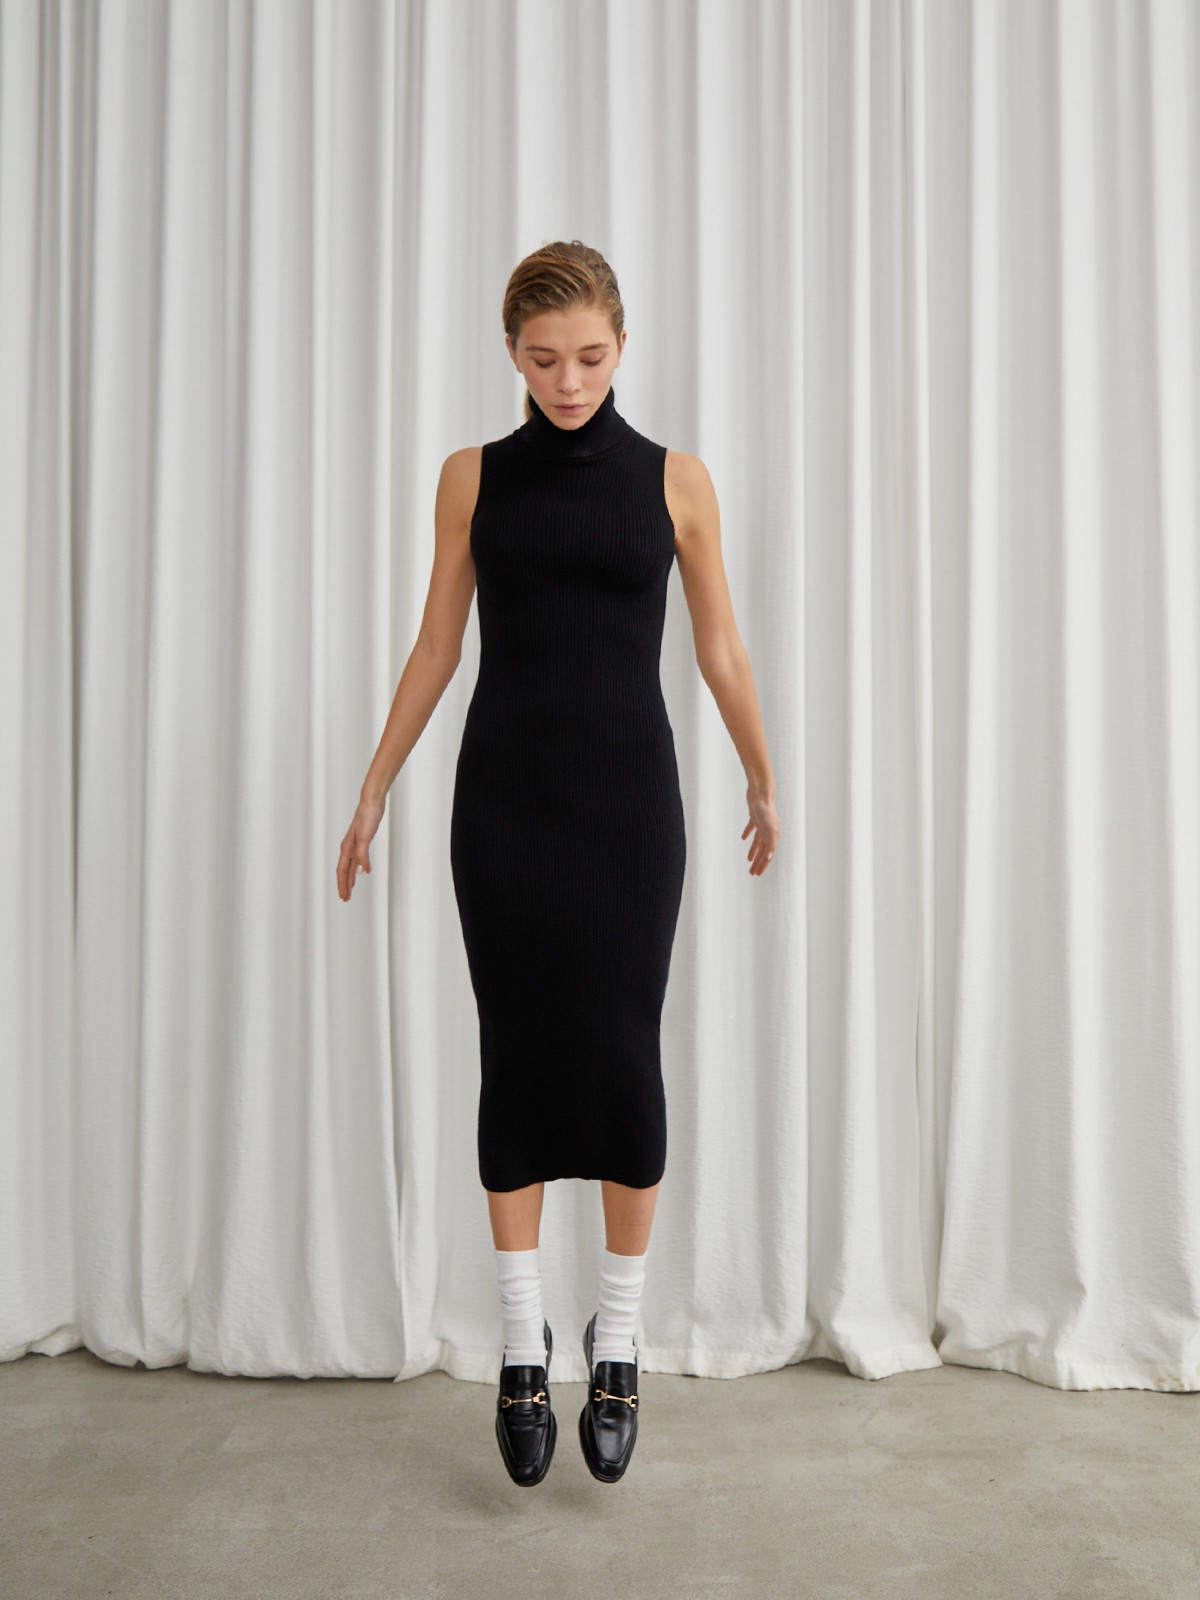 Легкое платье своими руками без выкройки: пошив, видео мк, 15 моделей